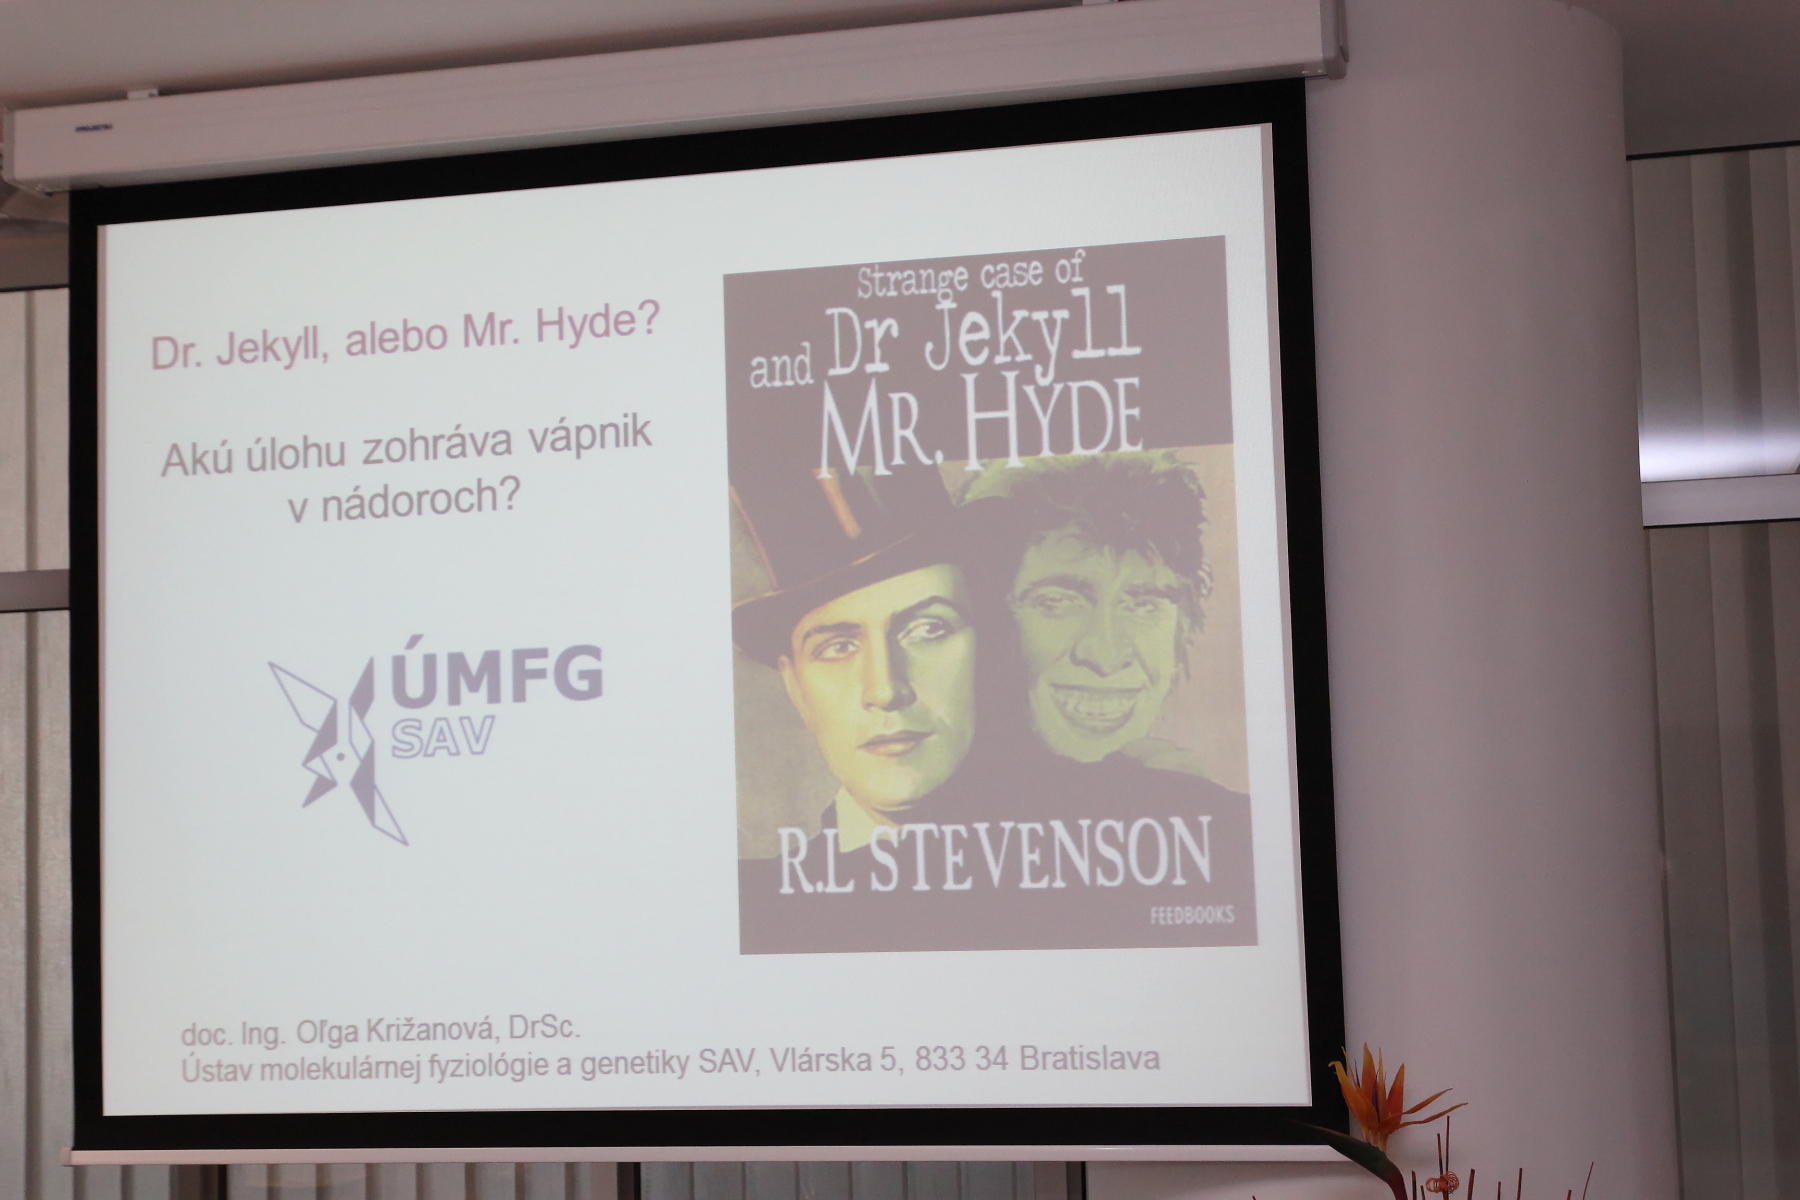 Dr. Jekyll, alebo Mr. Hyde – akú úlohu zohráva vápnik v nádoroch? – doc. Ing. Oľga Križanová, DrSc.